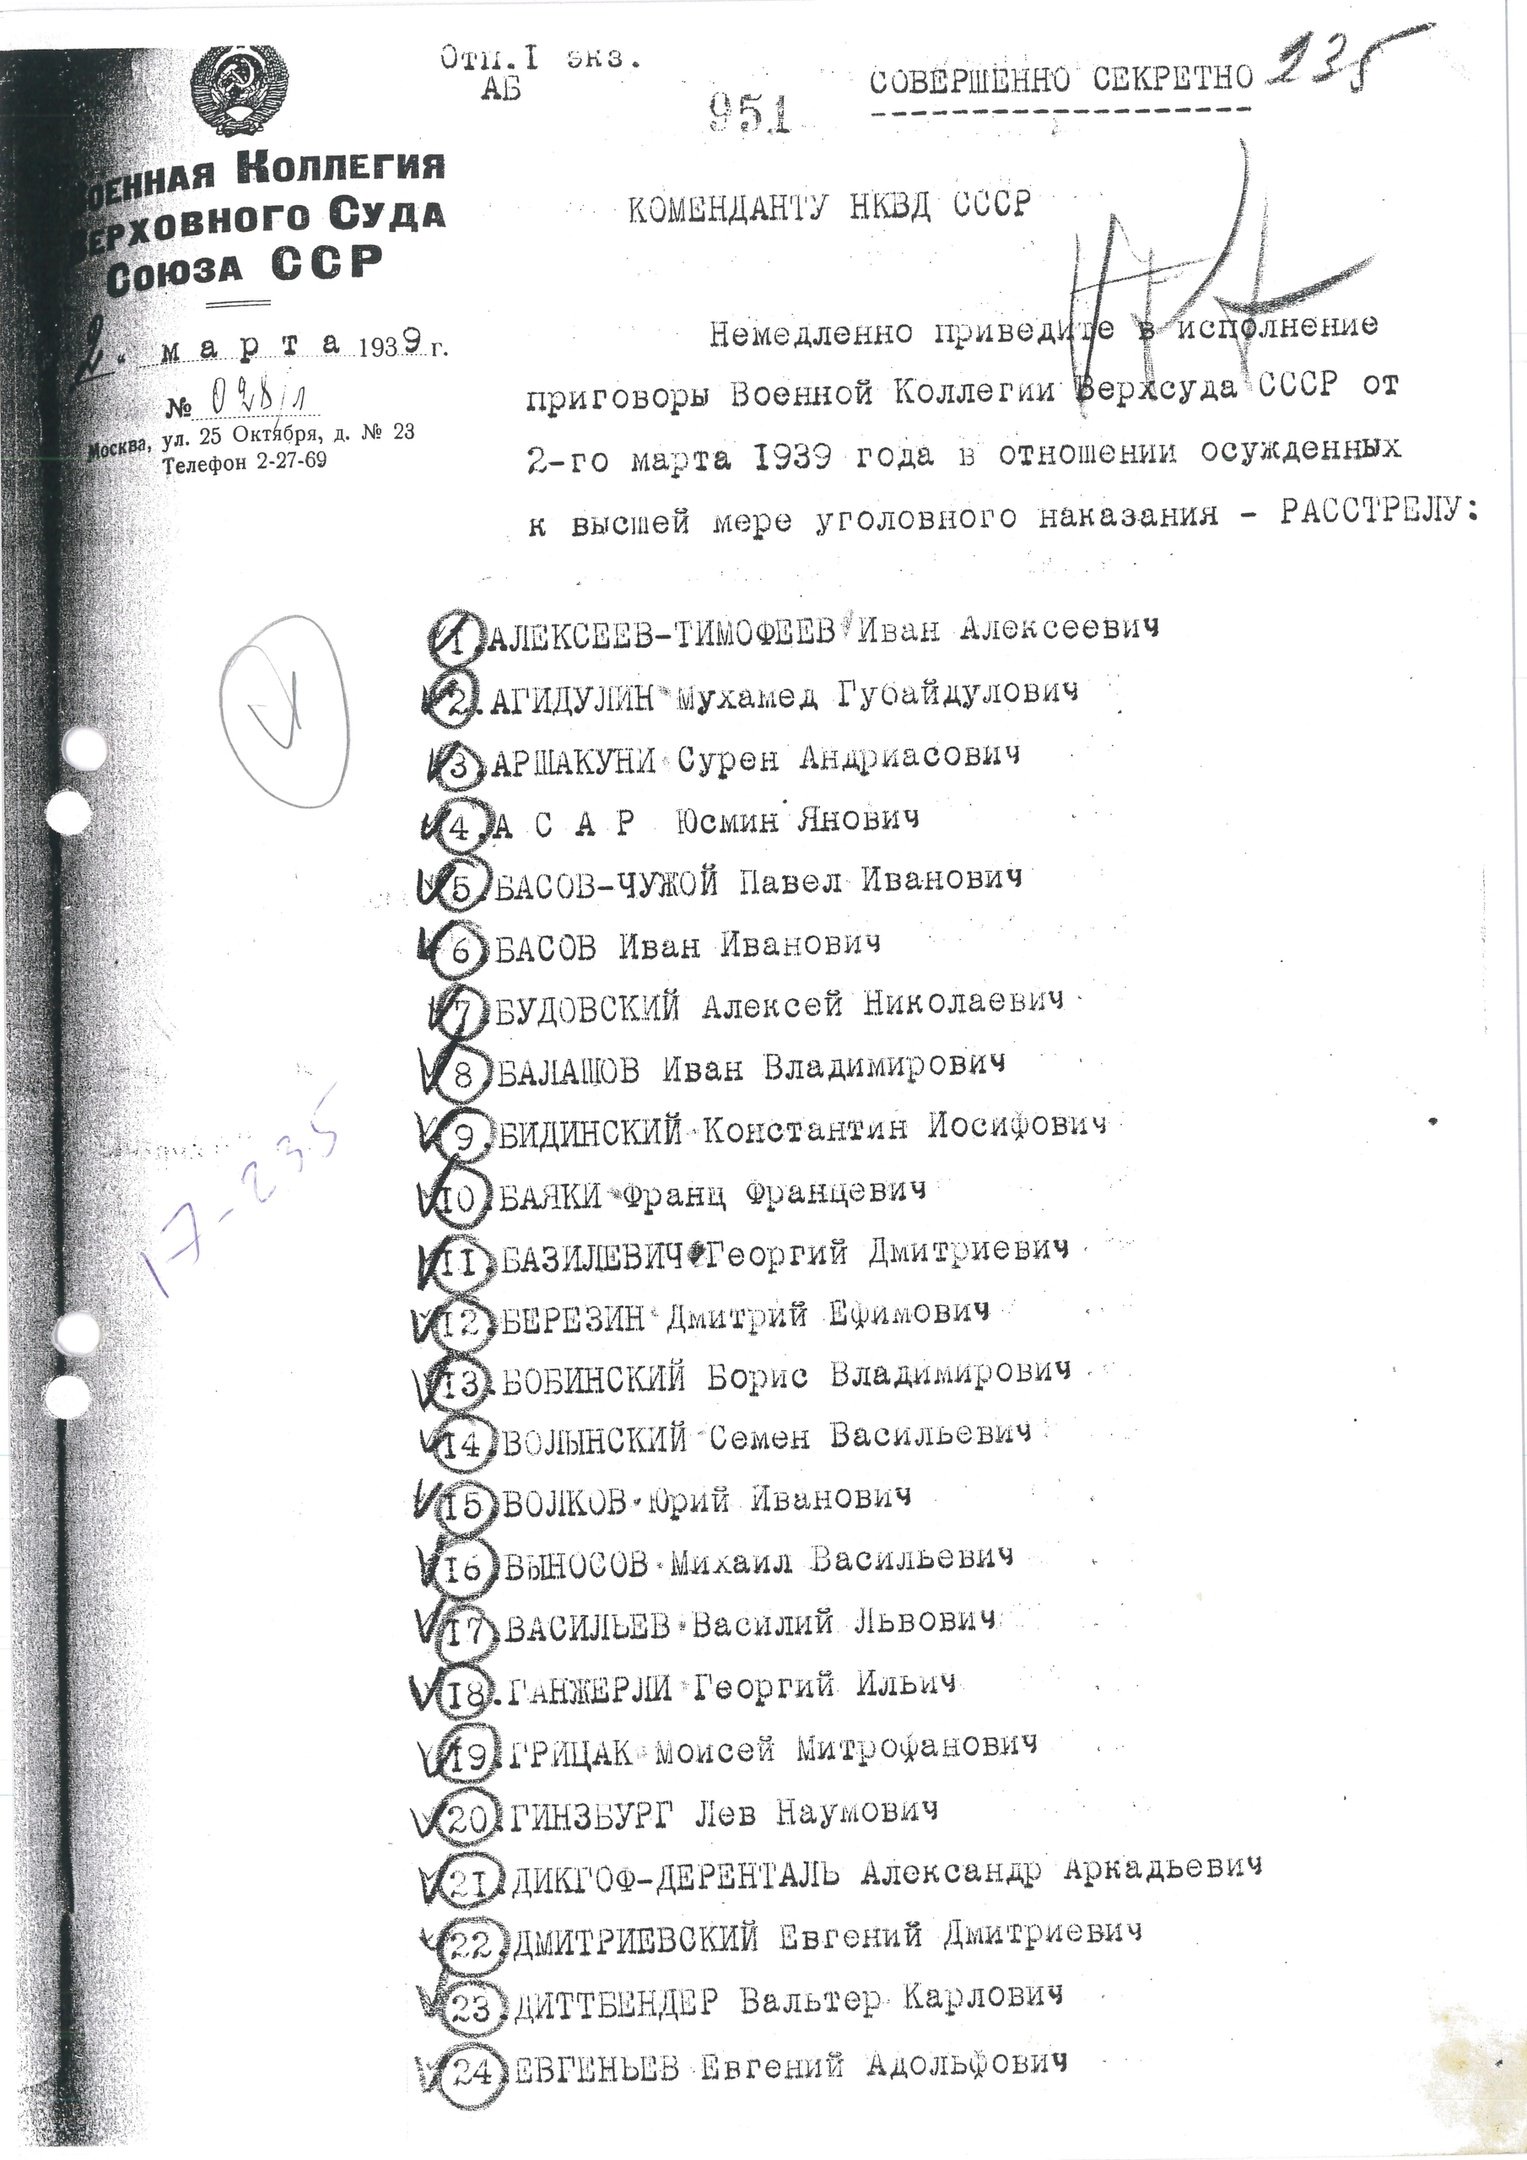 Предписание М. Г. Романычева к расстрелу В. М. Блохину от 2.3.1939 г.